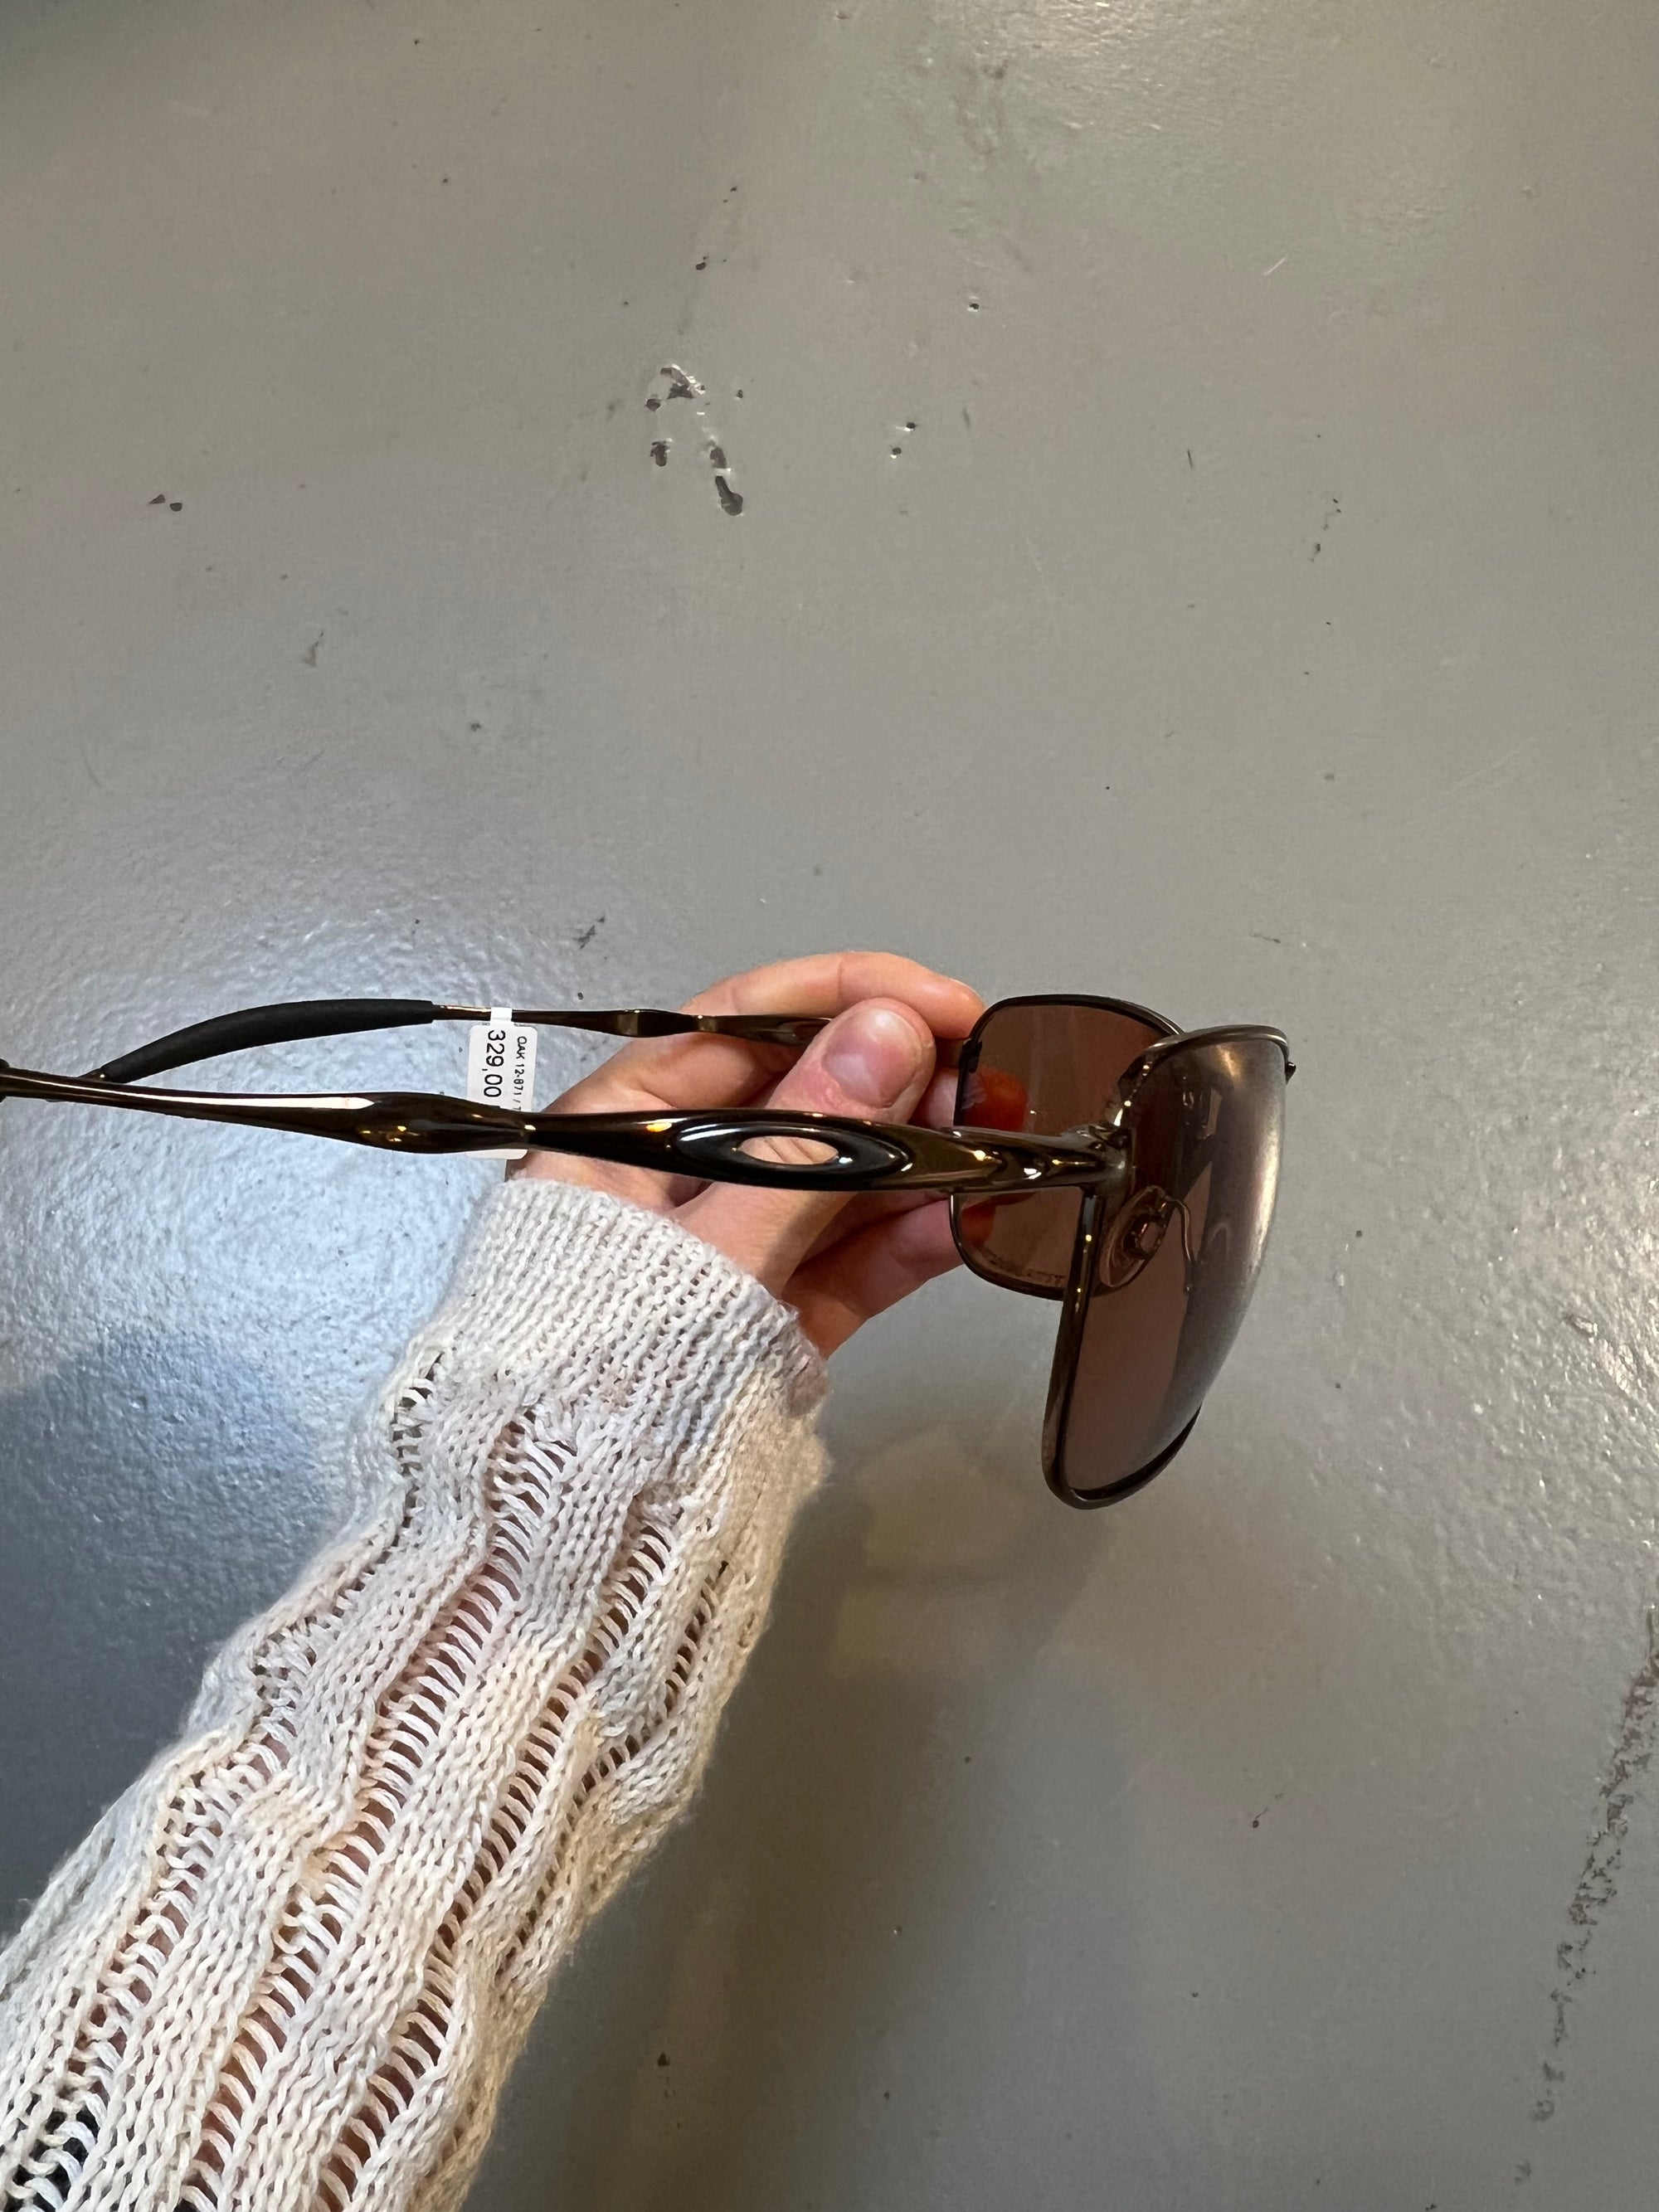 Produktbild von Oakley Titanium Sunglasses von der seite